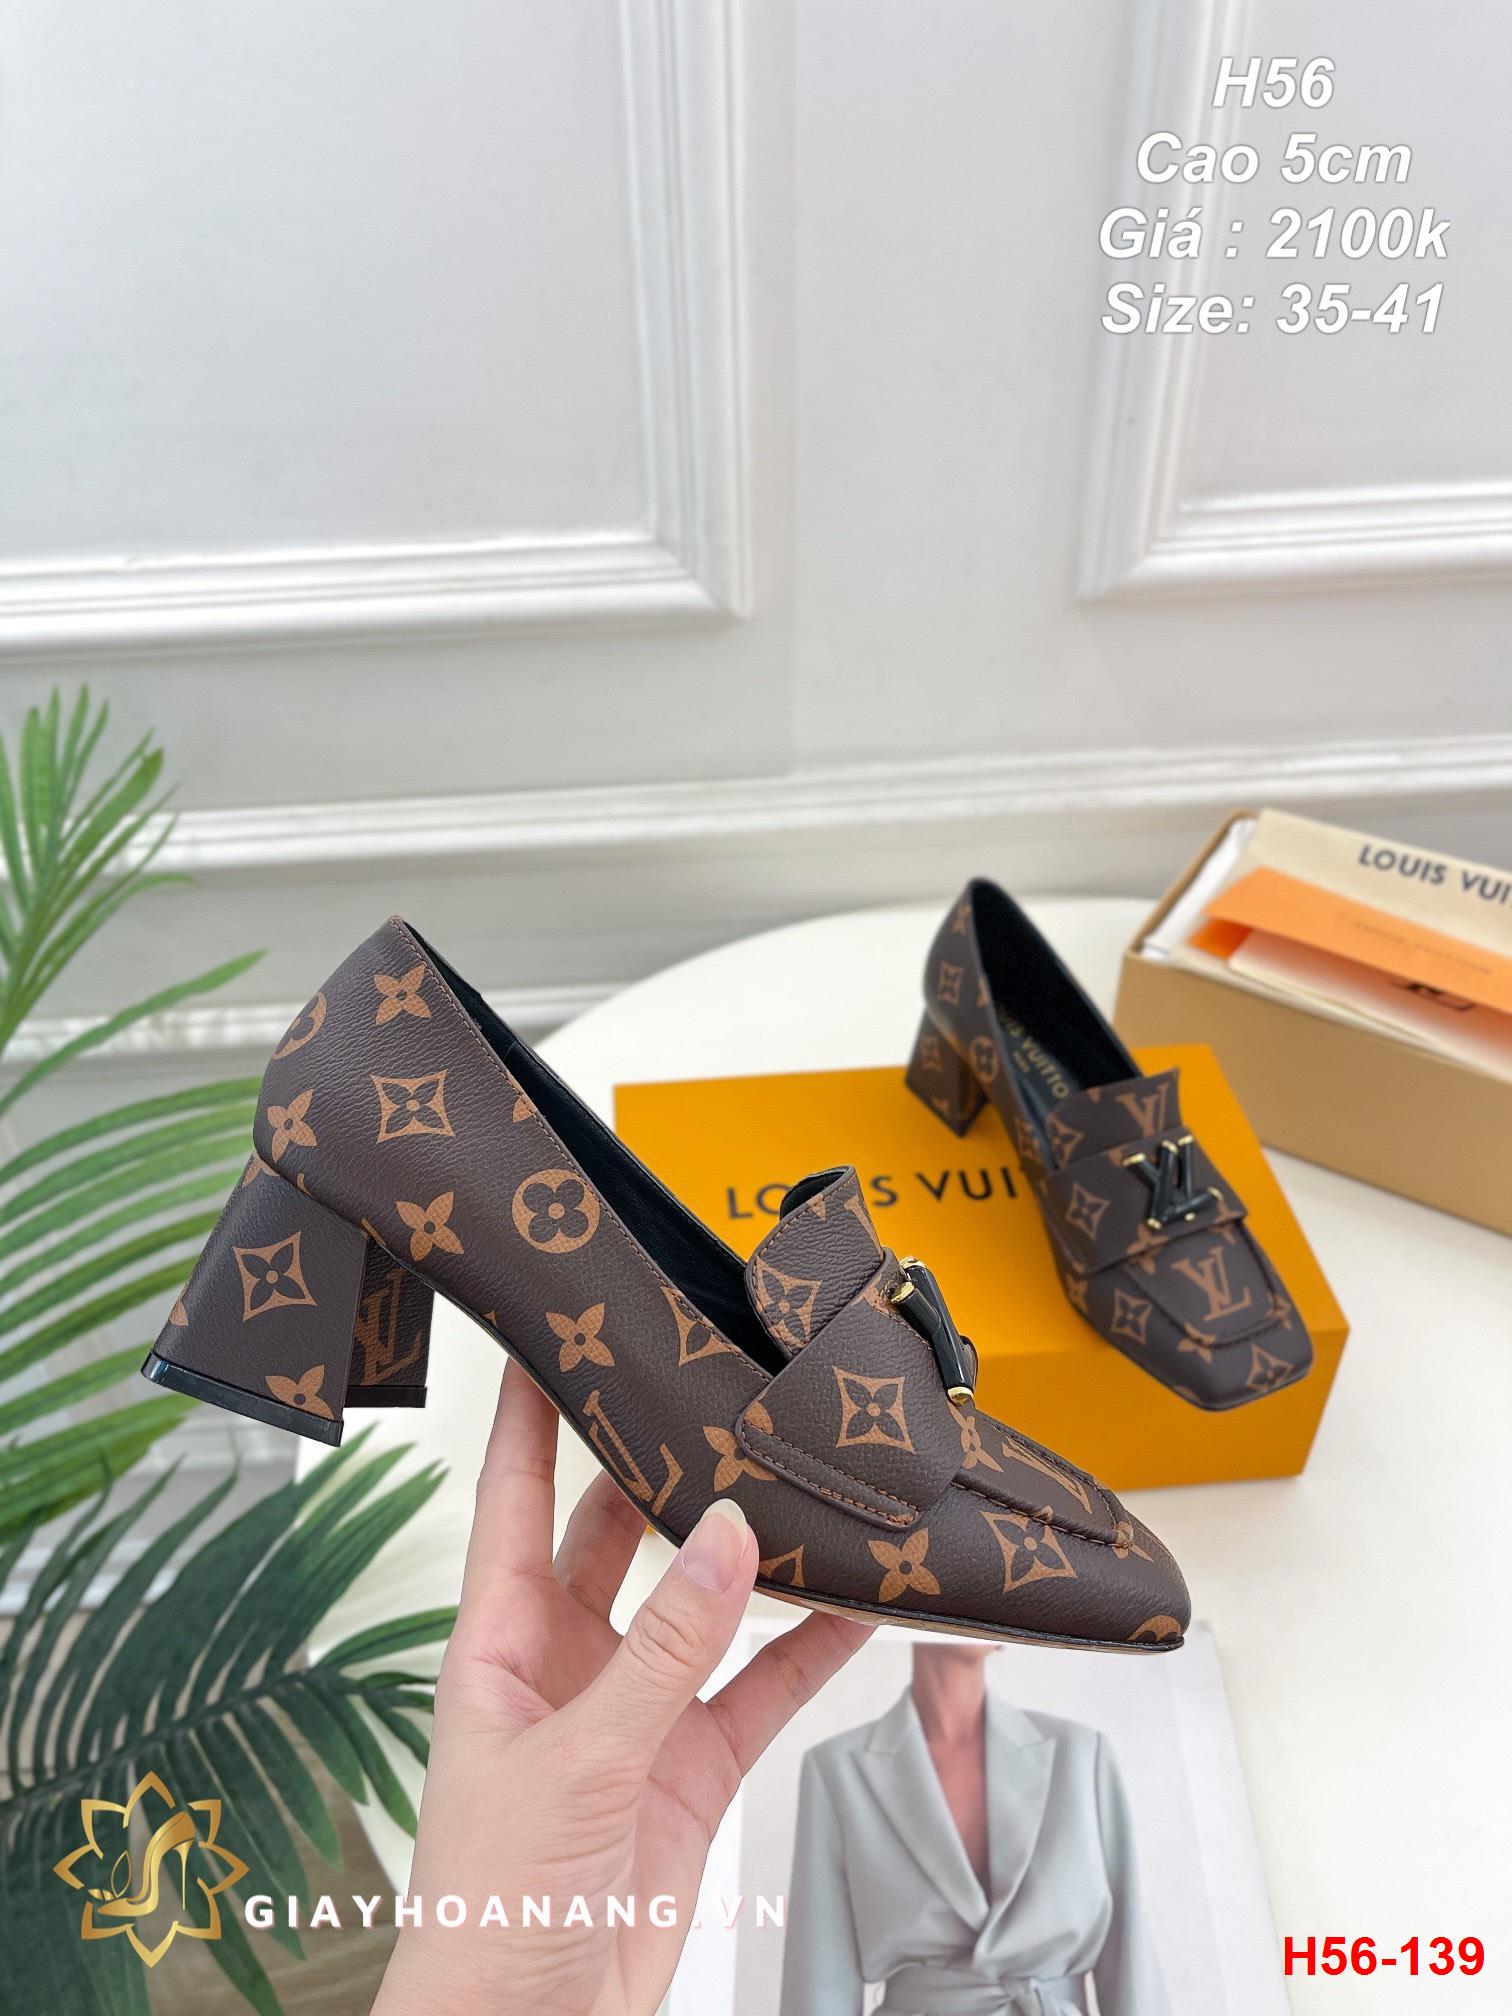 H56-139 Louis Vuitton giày cao 5cm siêu cấp